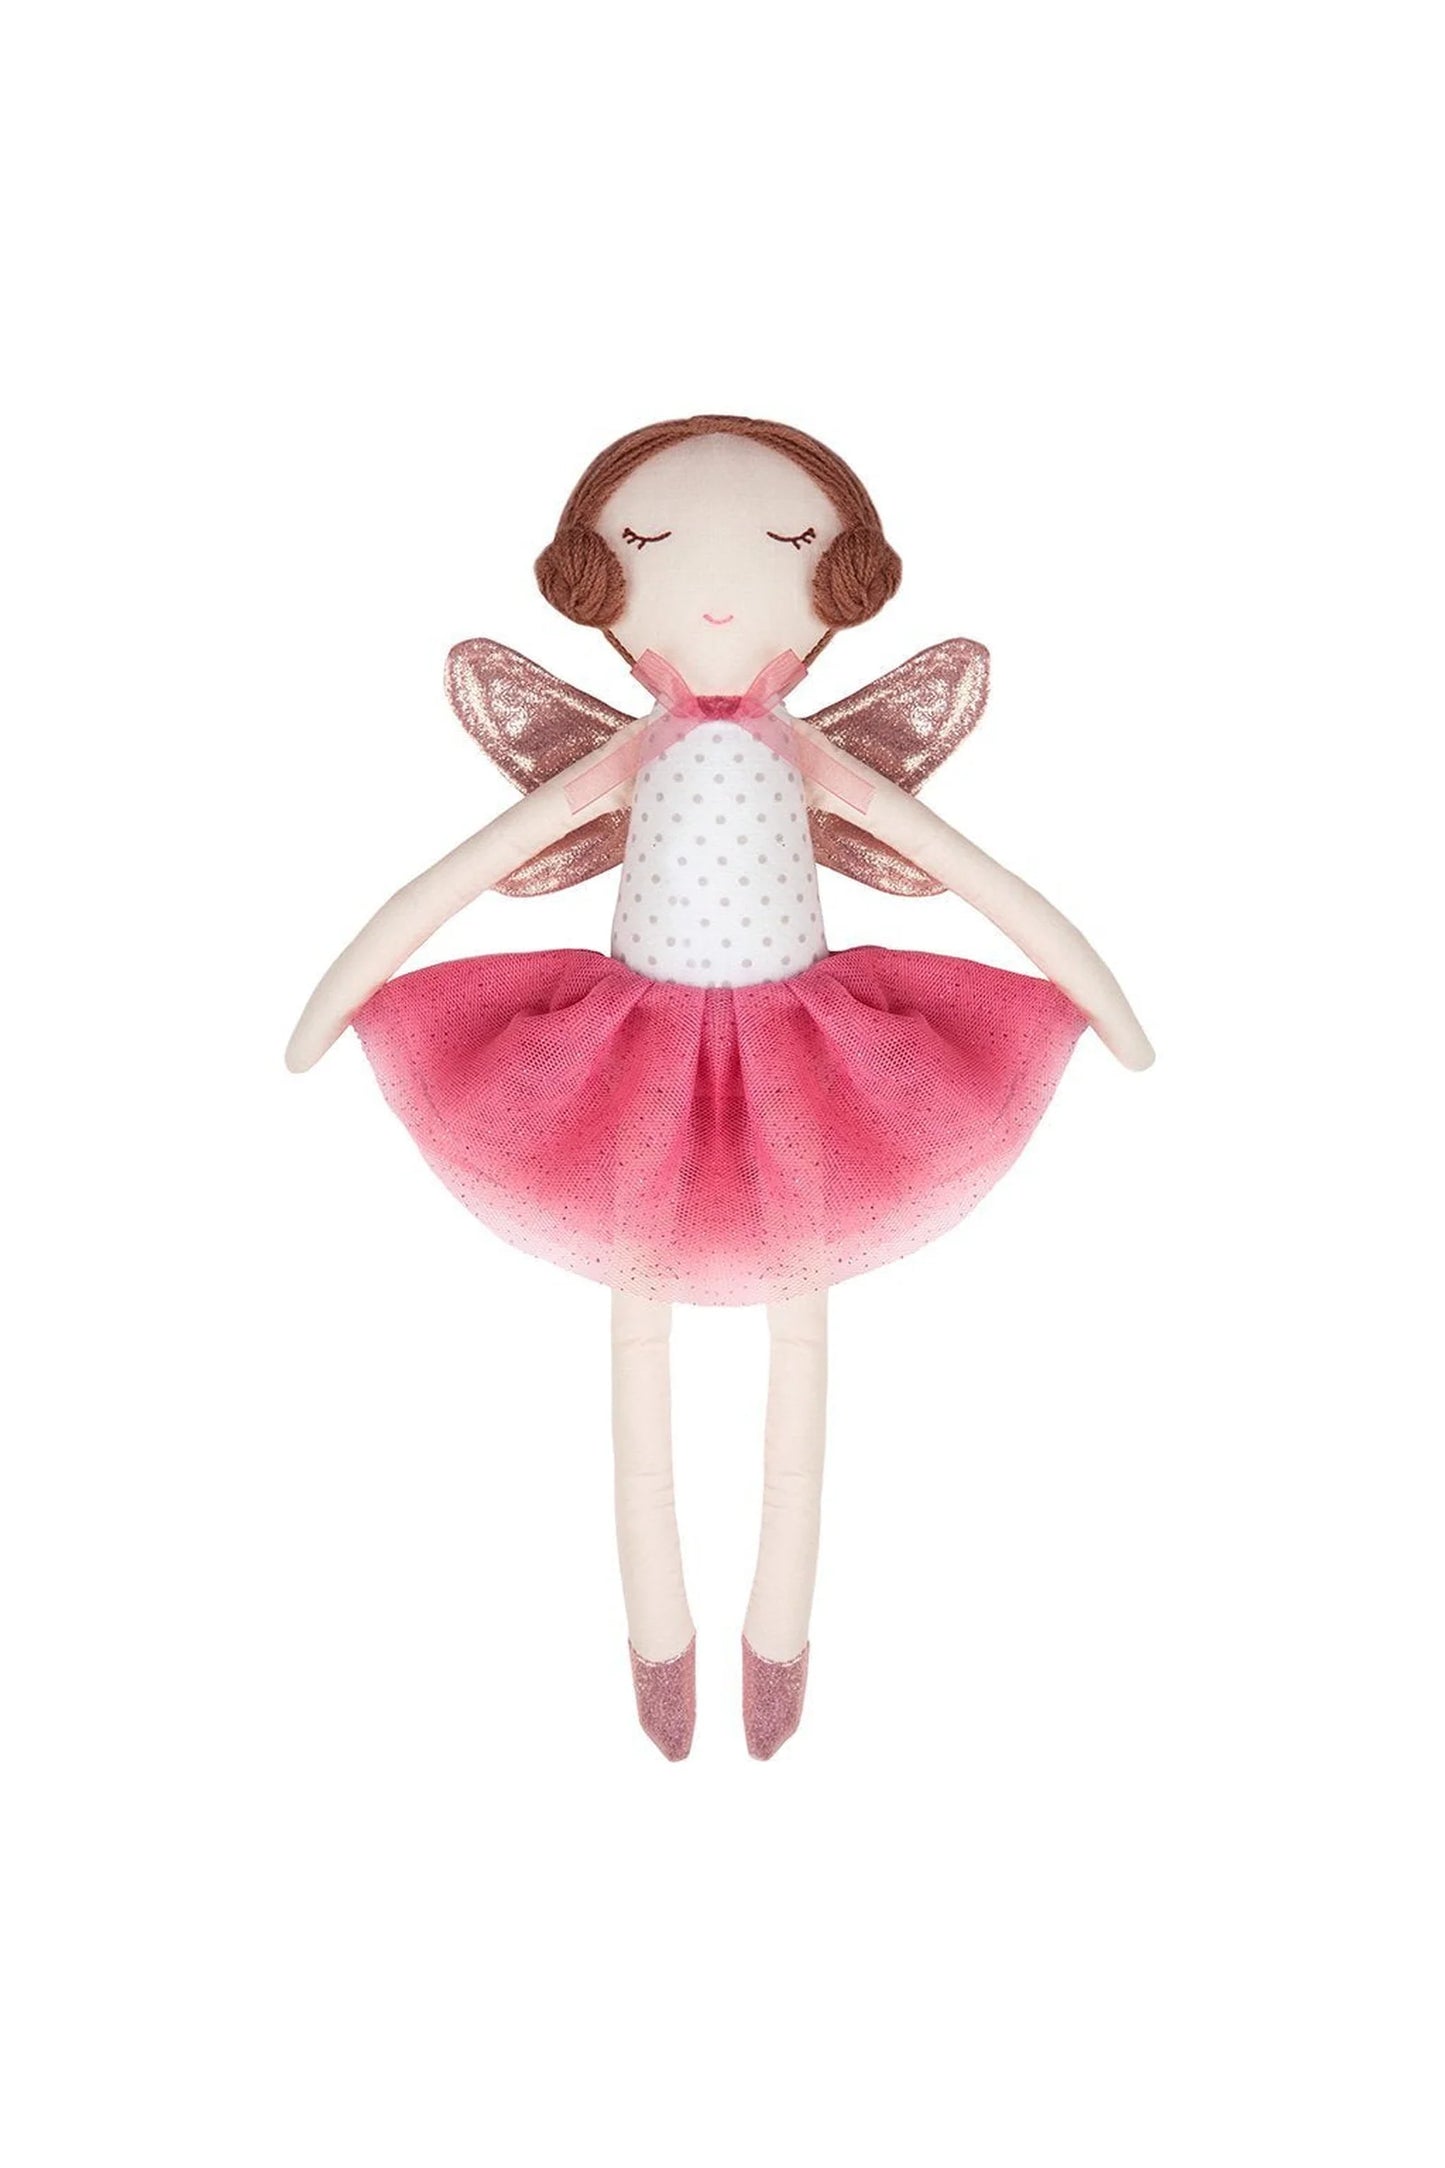 Doll - Sara the Fairy